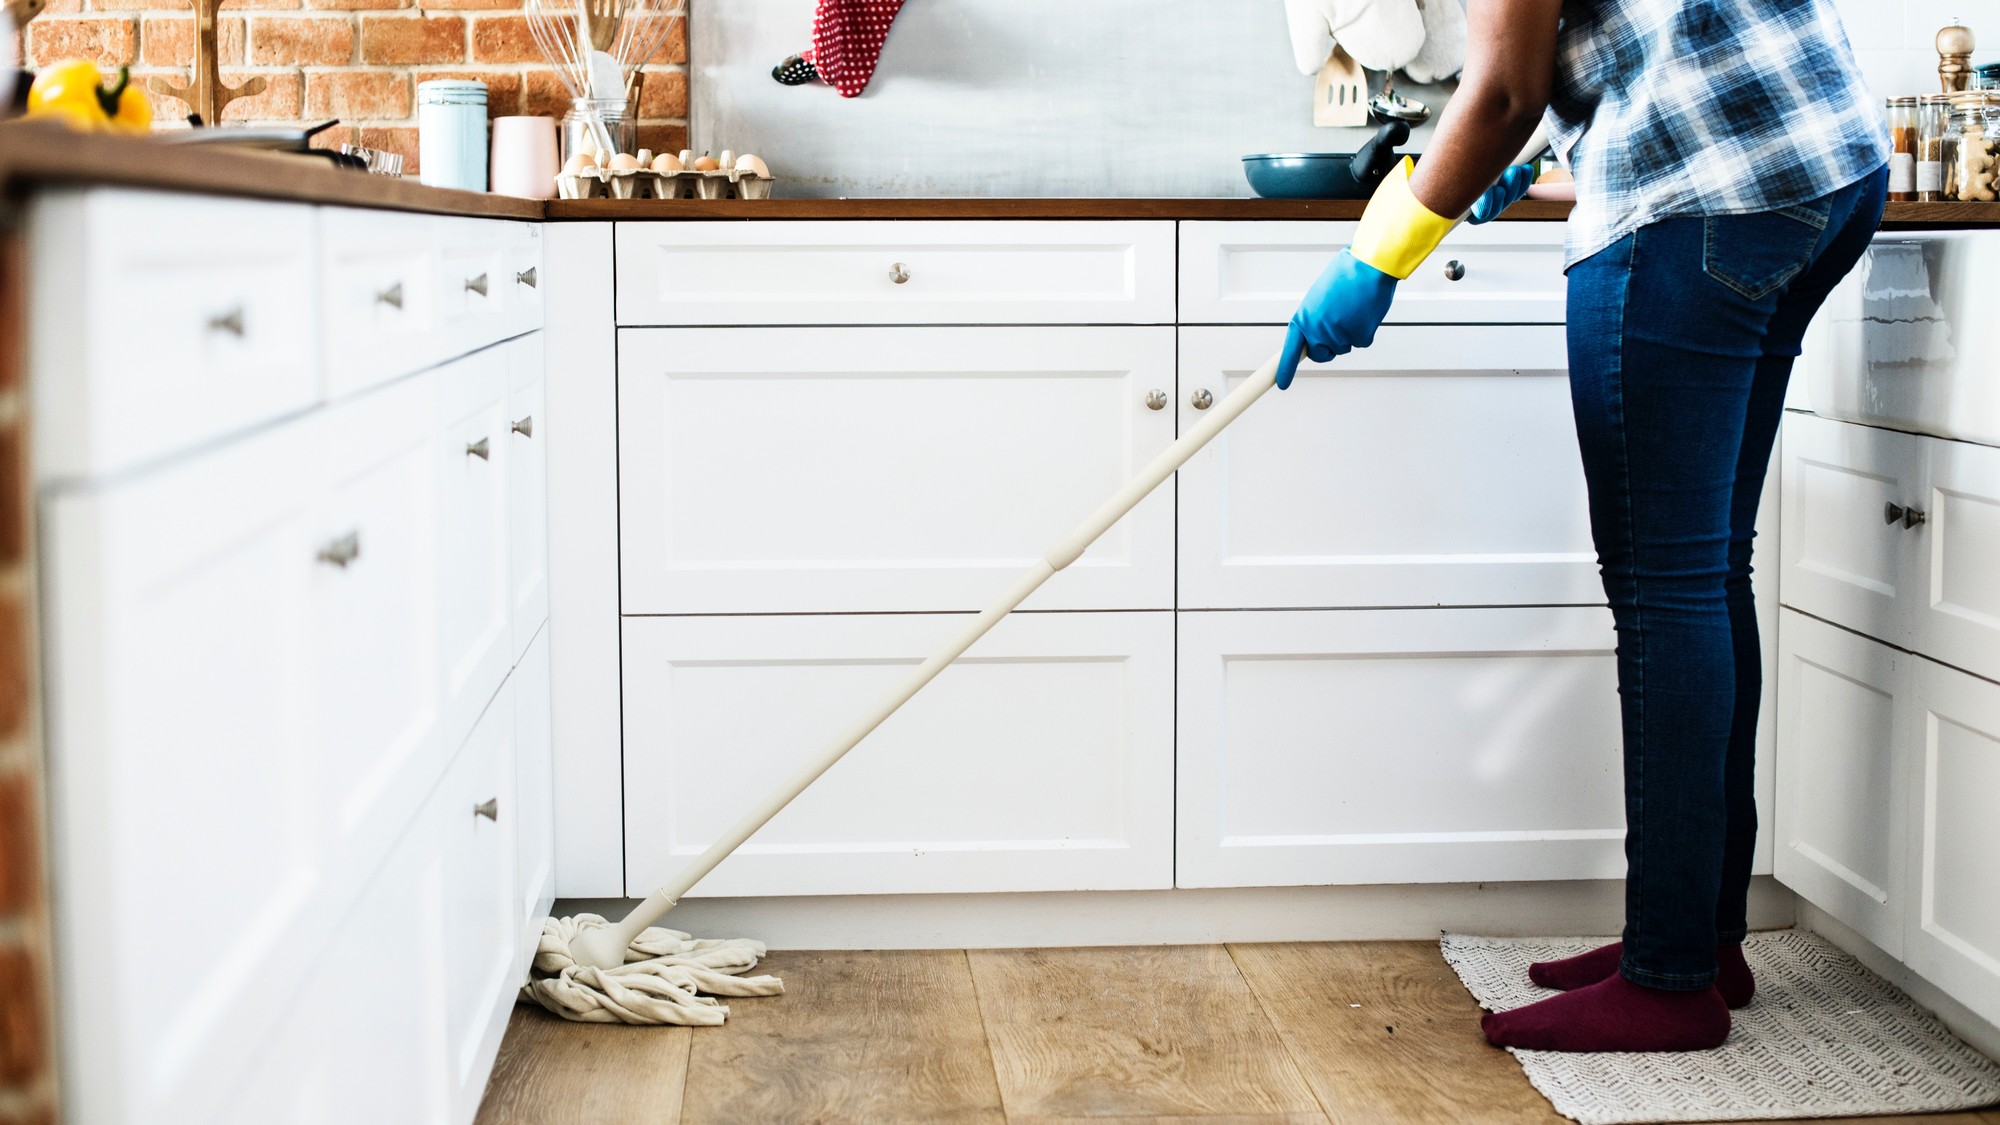 Aumento a empleadas domésticas: cómo quedan los salarios con el nuevo tramo del incremento